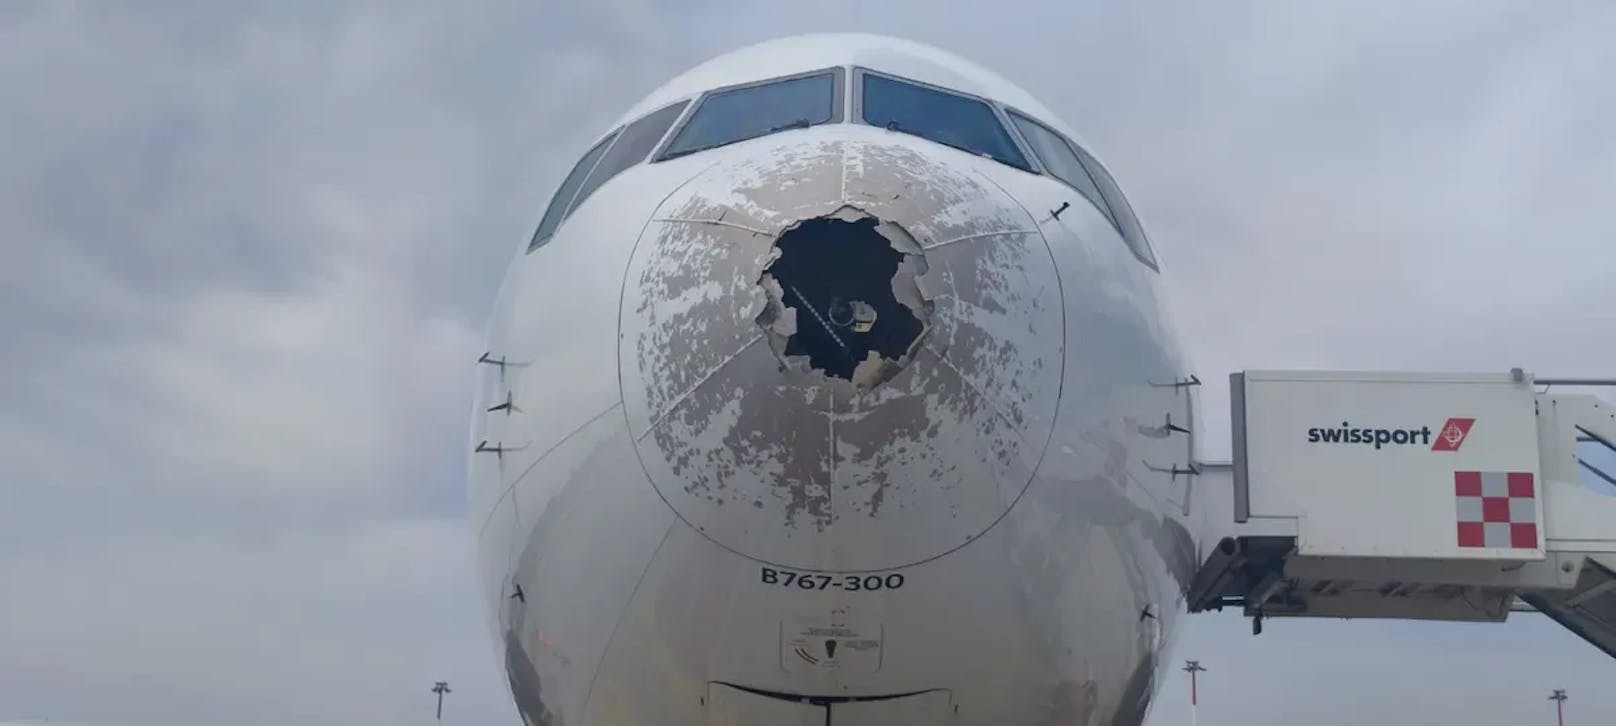 Heftige Turbulenzen und ein Hagelsturm mit großen Körnern beschädigten die Boeing.